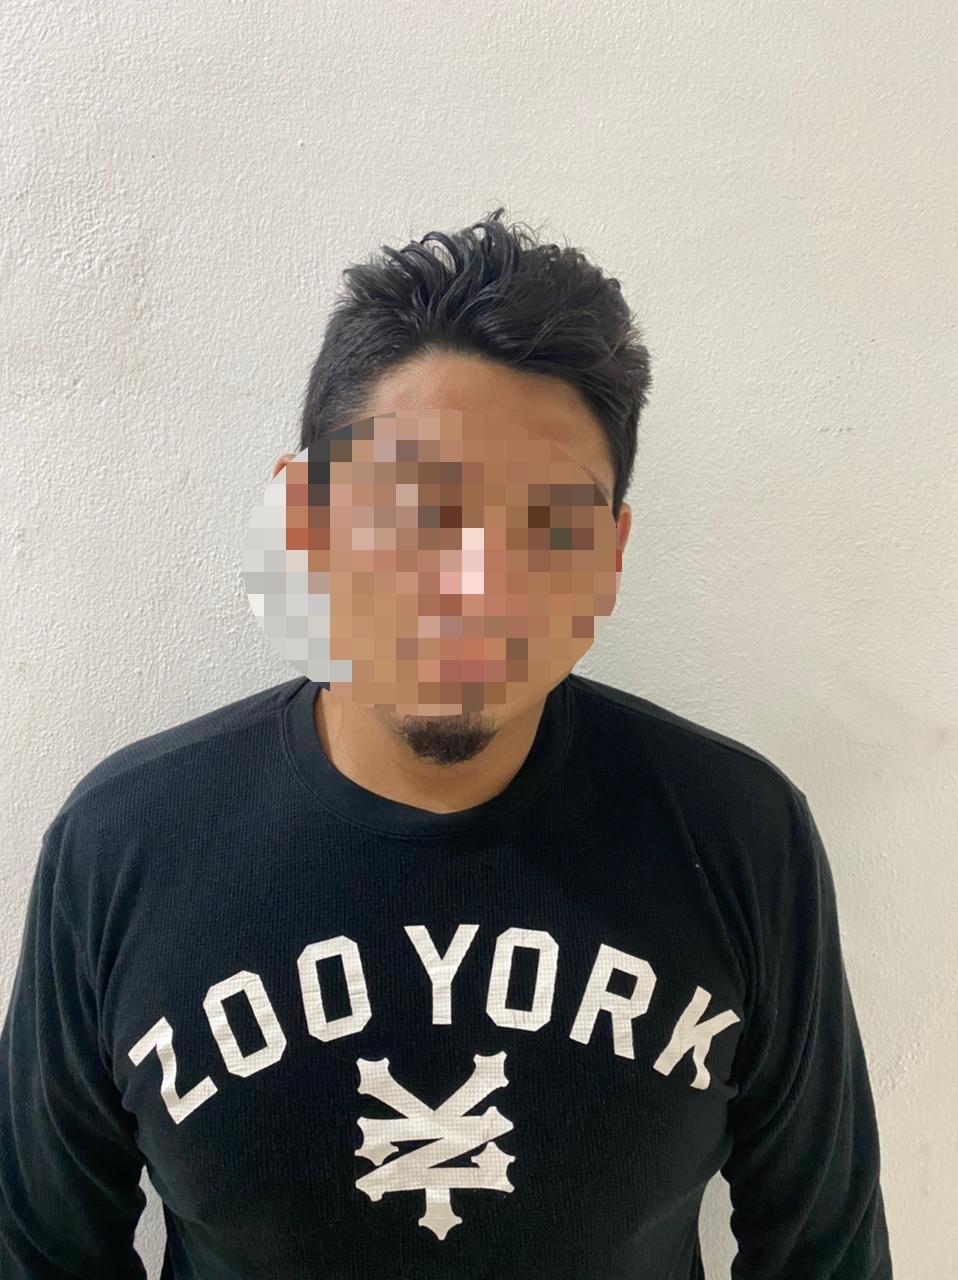 Asaltante es detenido por su propia víctima en Cozumel